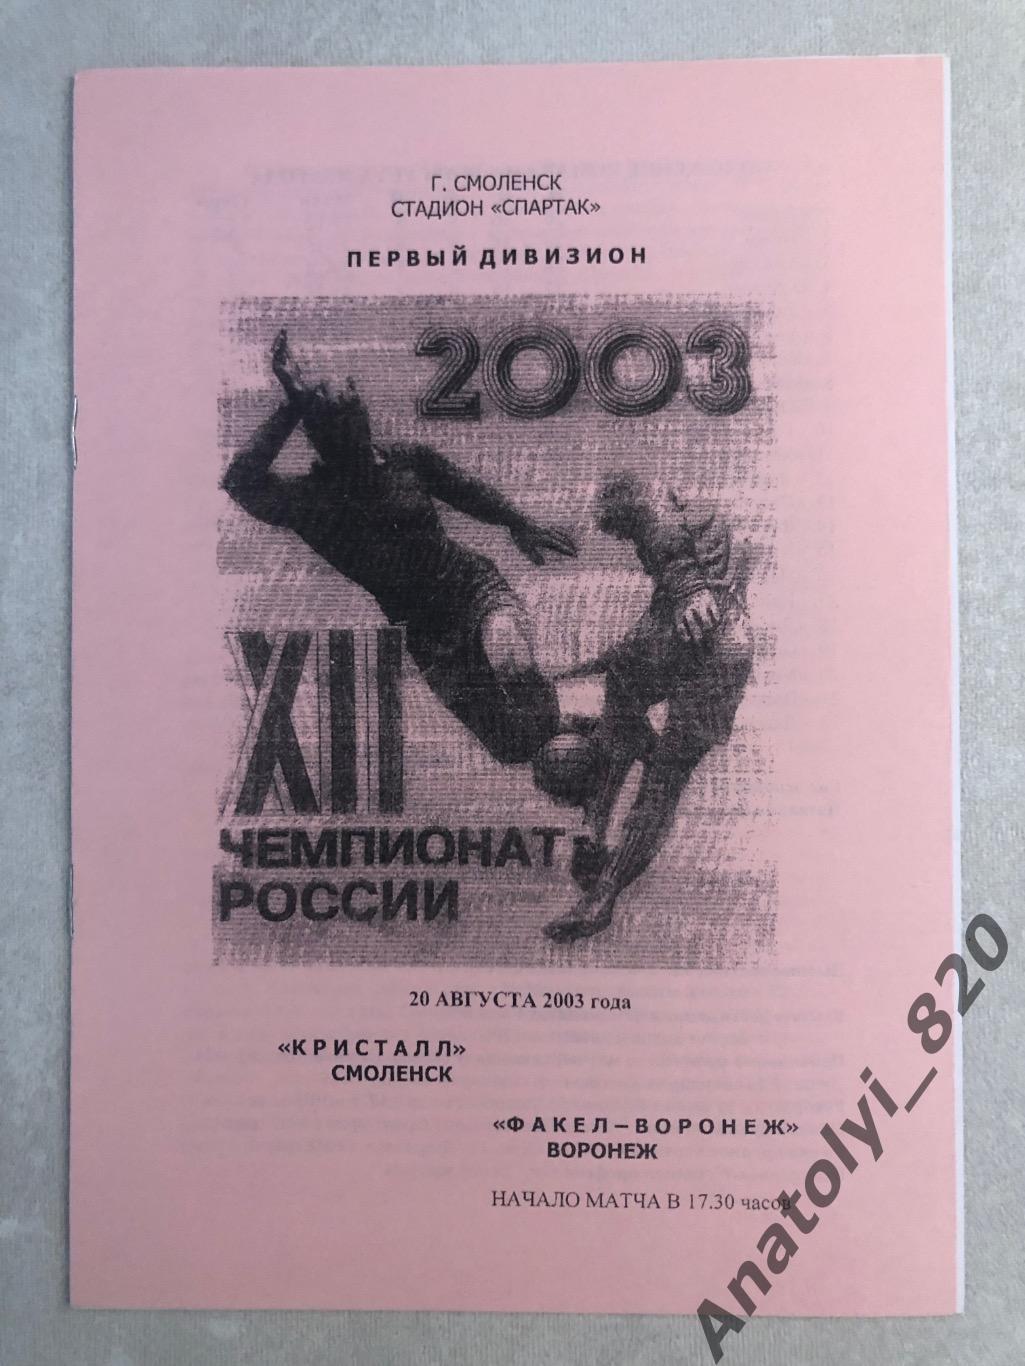 Кристалл Смоленск - Факел Воронеж 2003 год